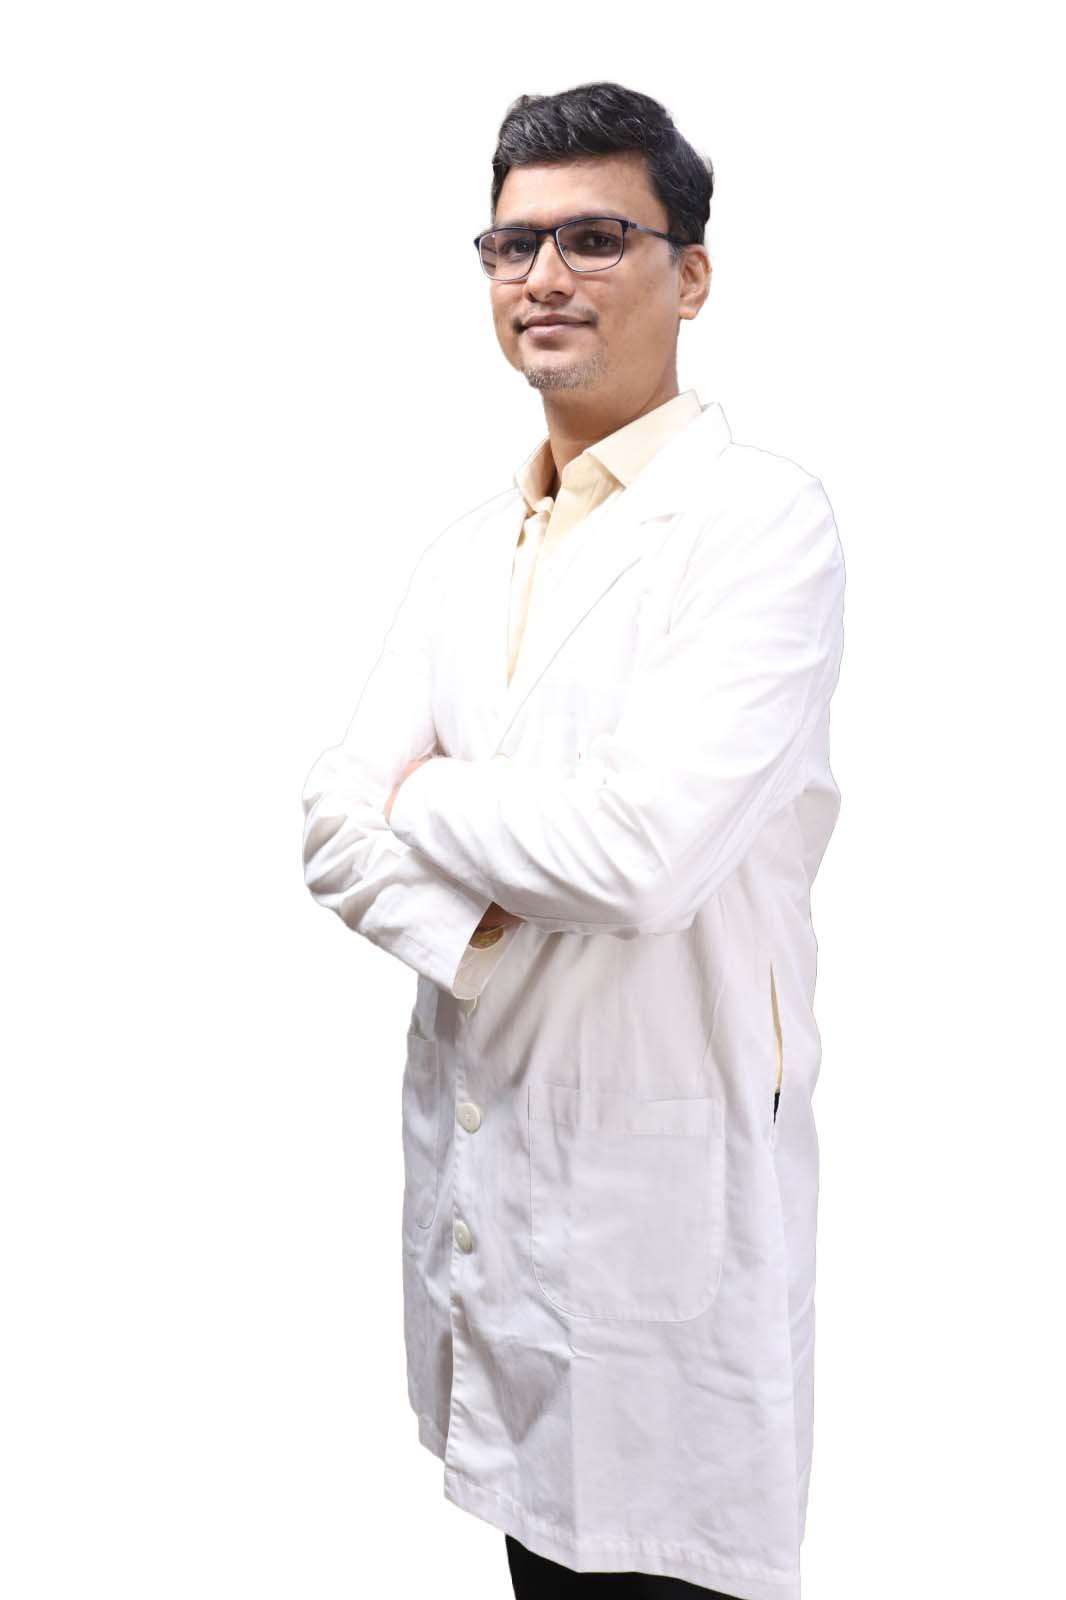 Dr. Harshad Khairnar